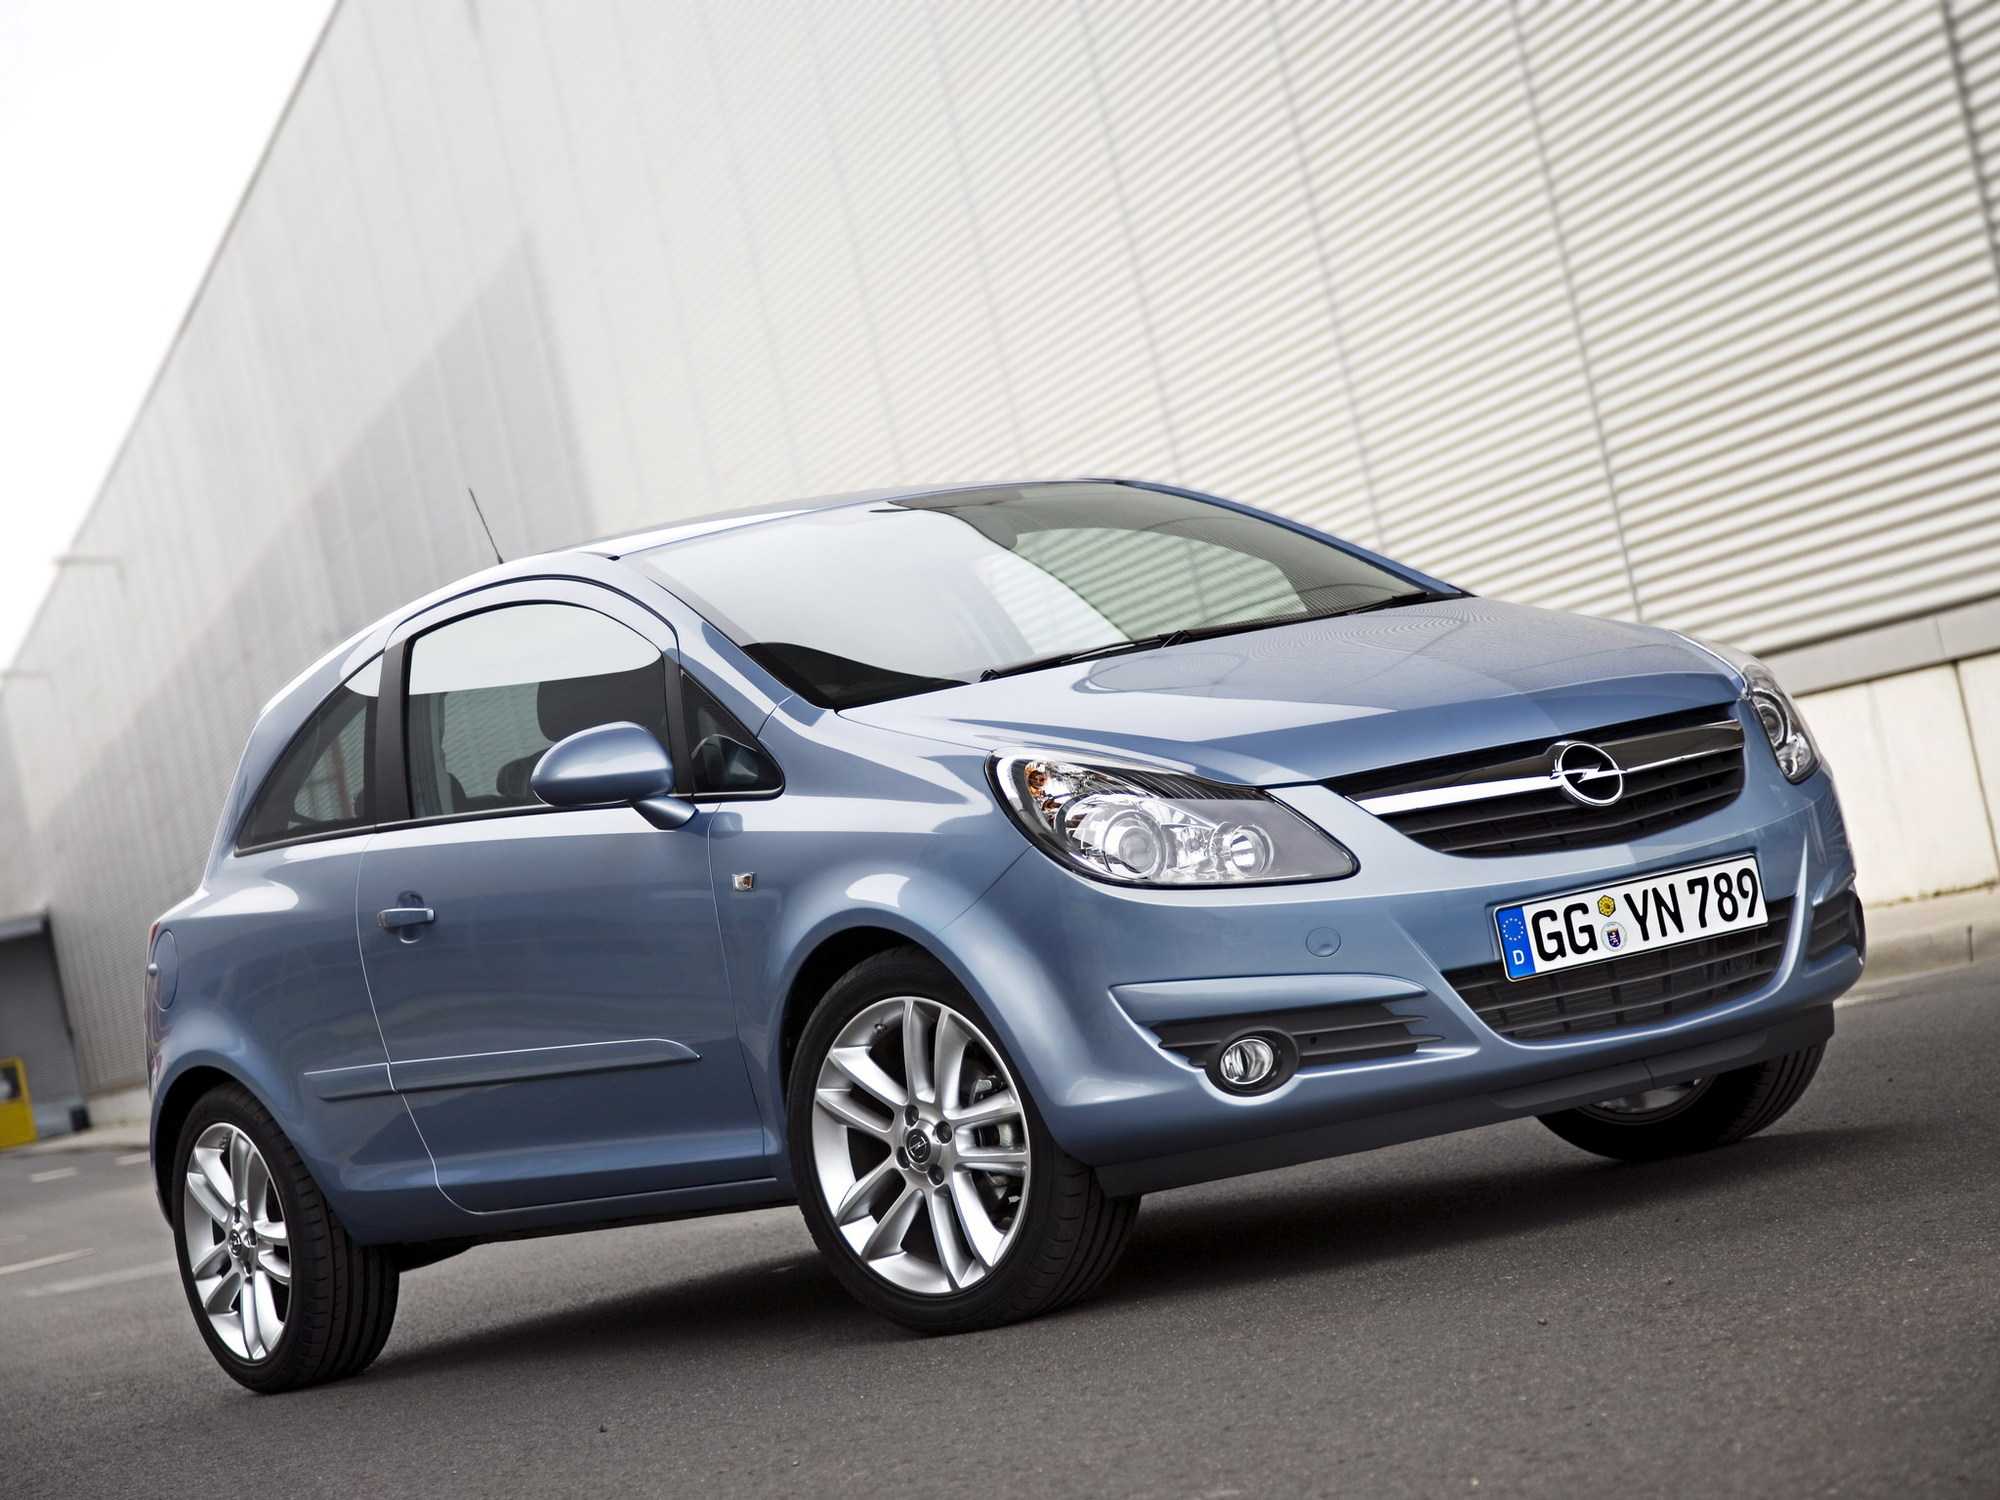 Opel corsa - обзор, цены, видео, технические характеристики опель корса